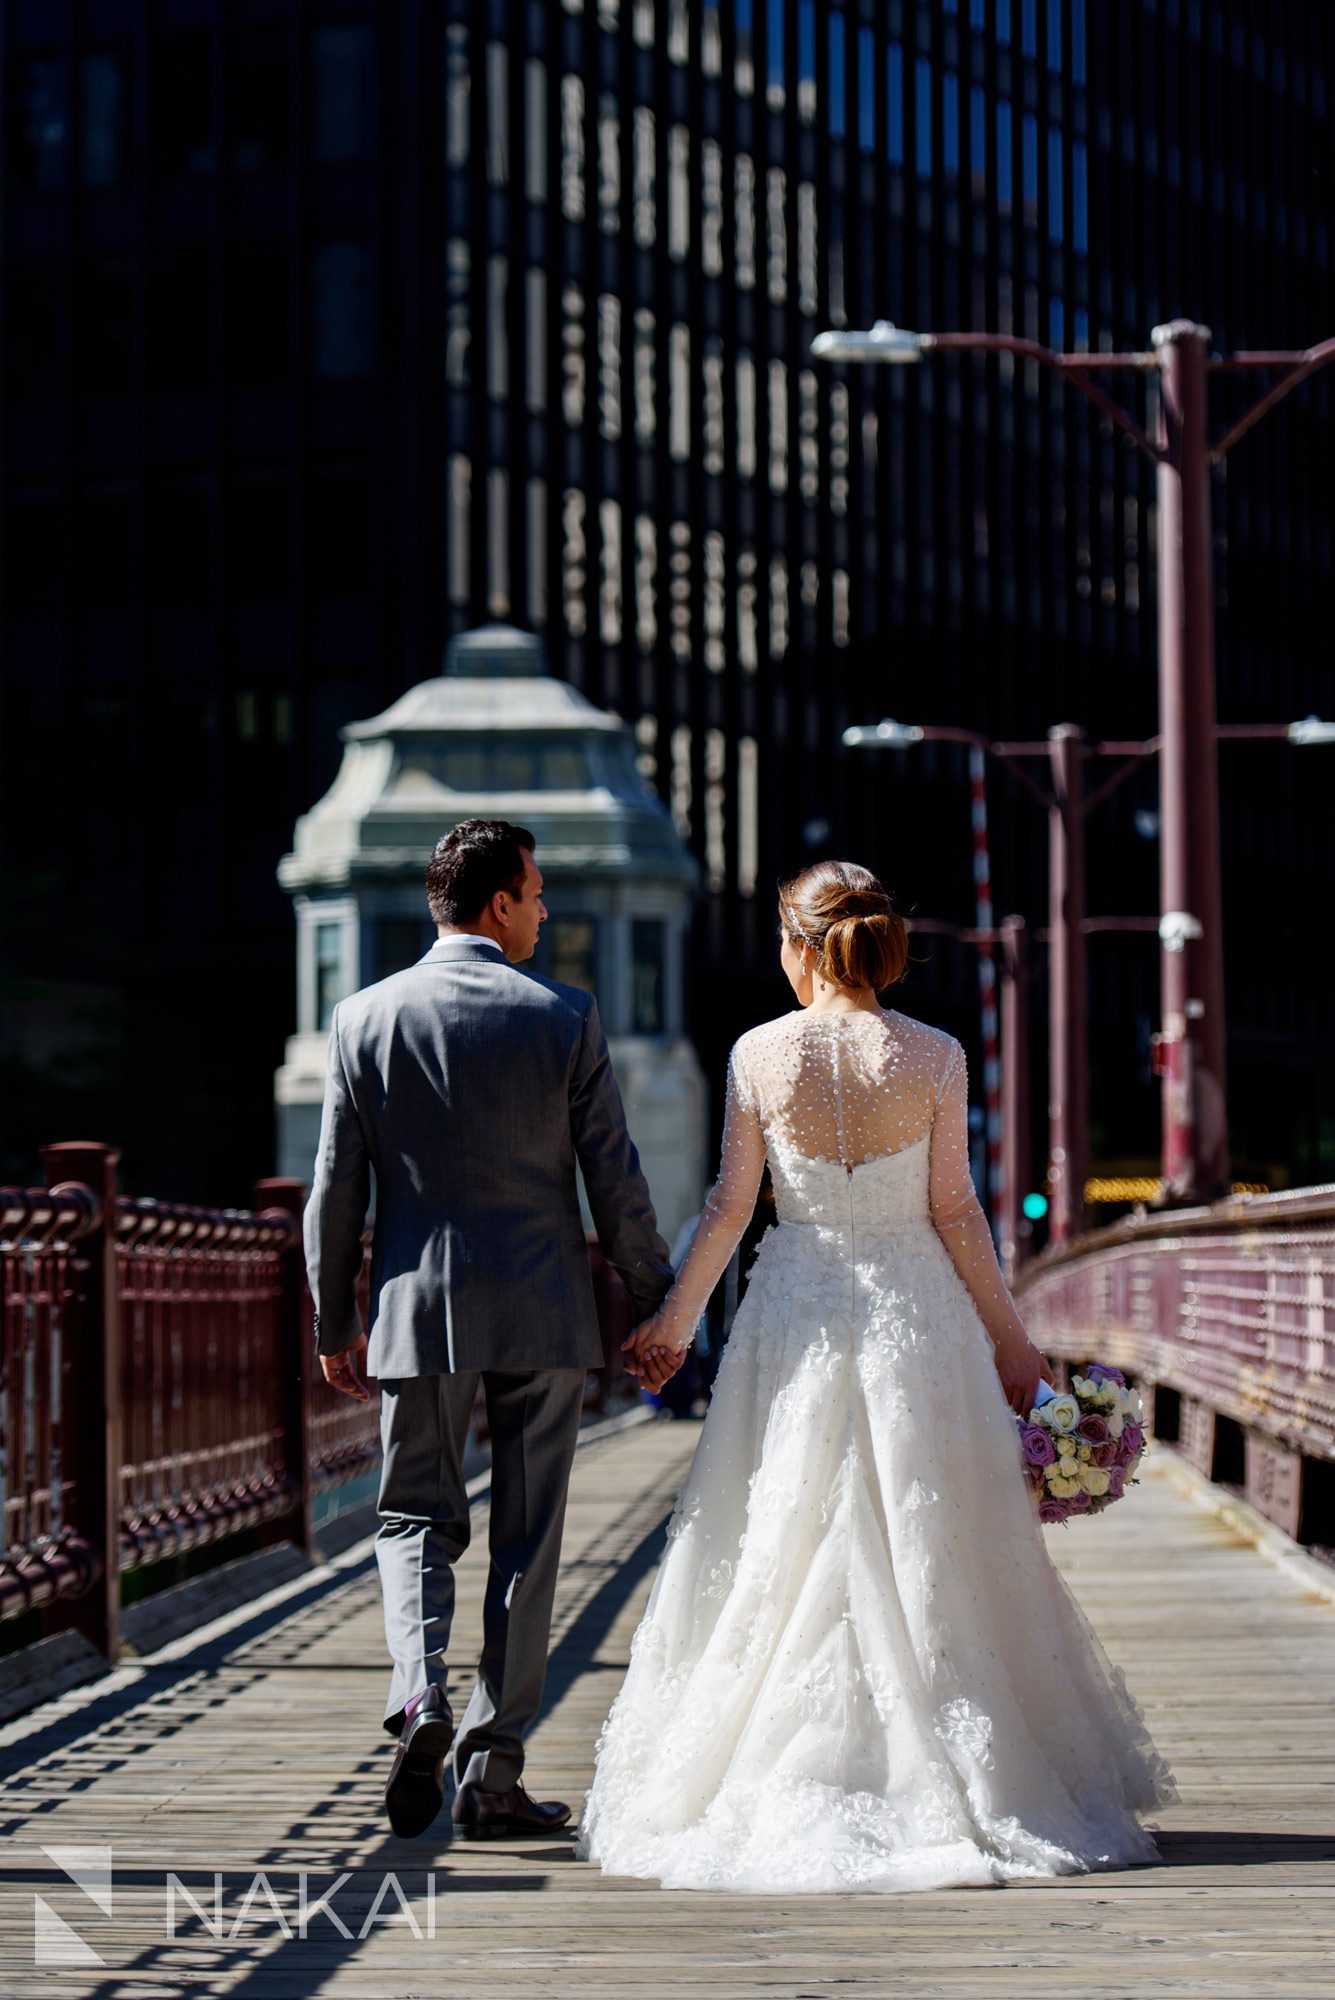 Chicago riverwalk wedding pictures 